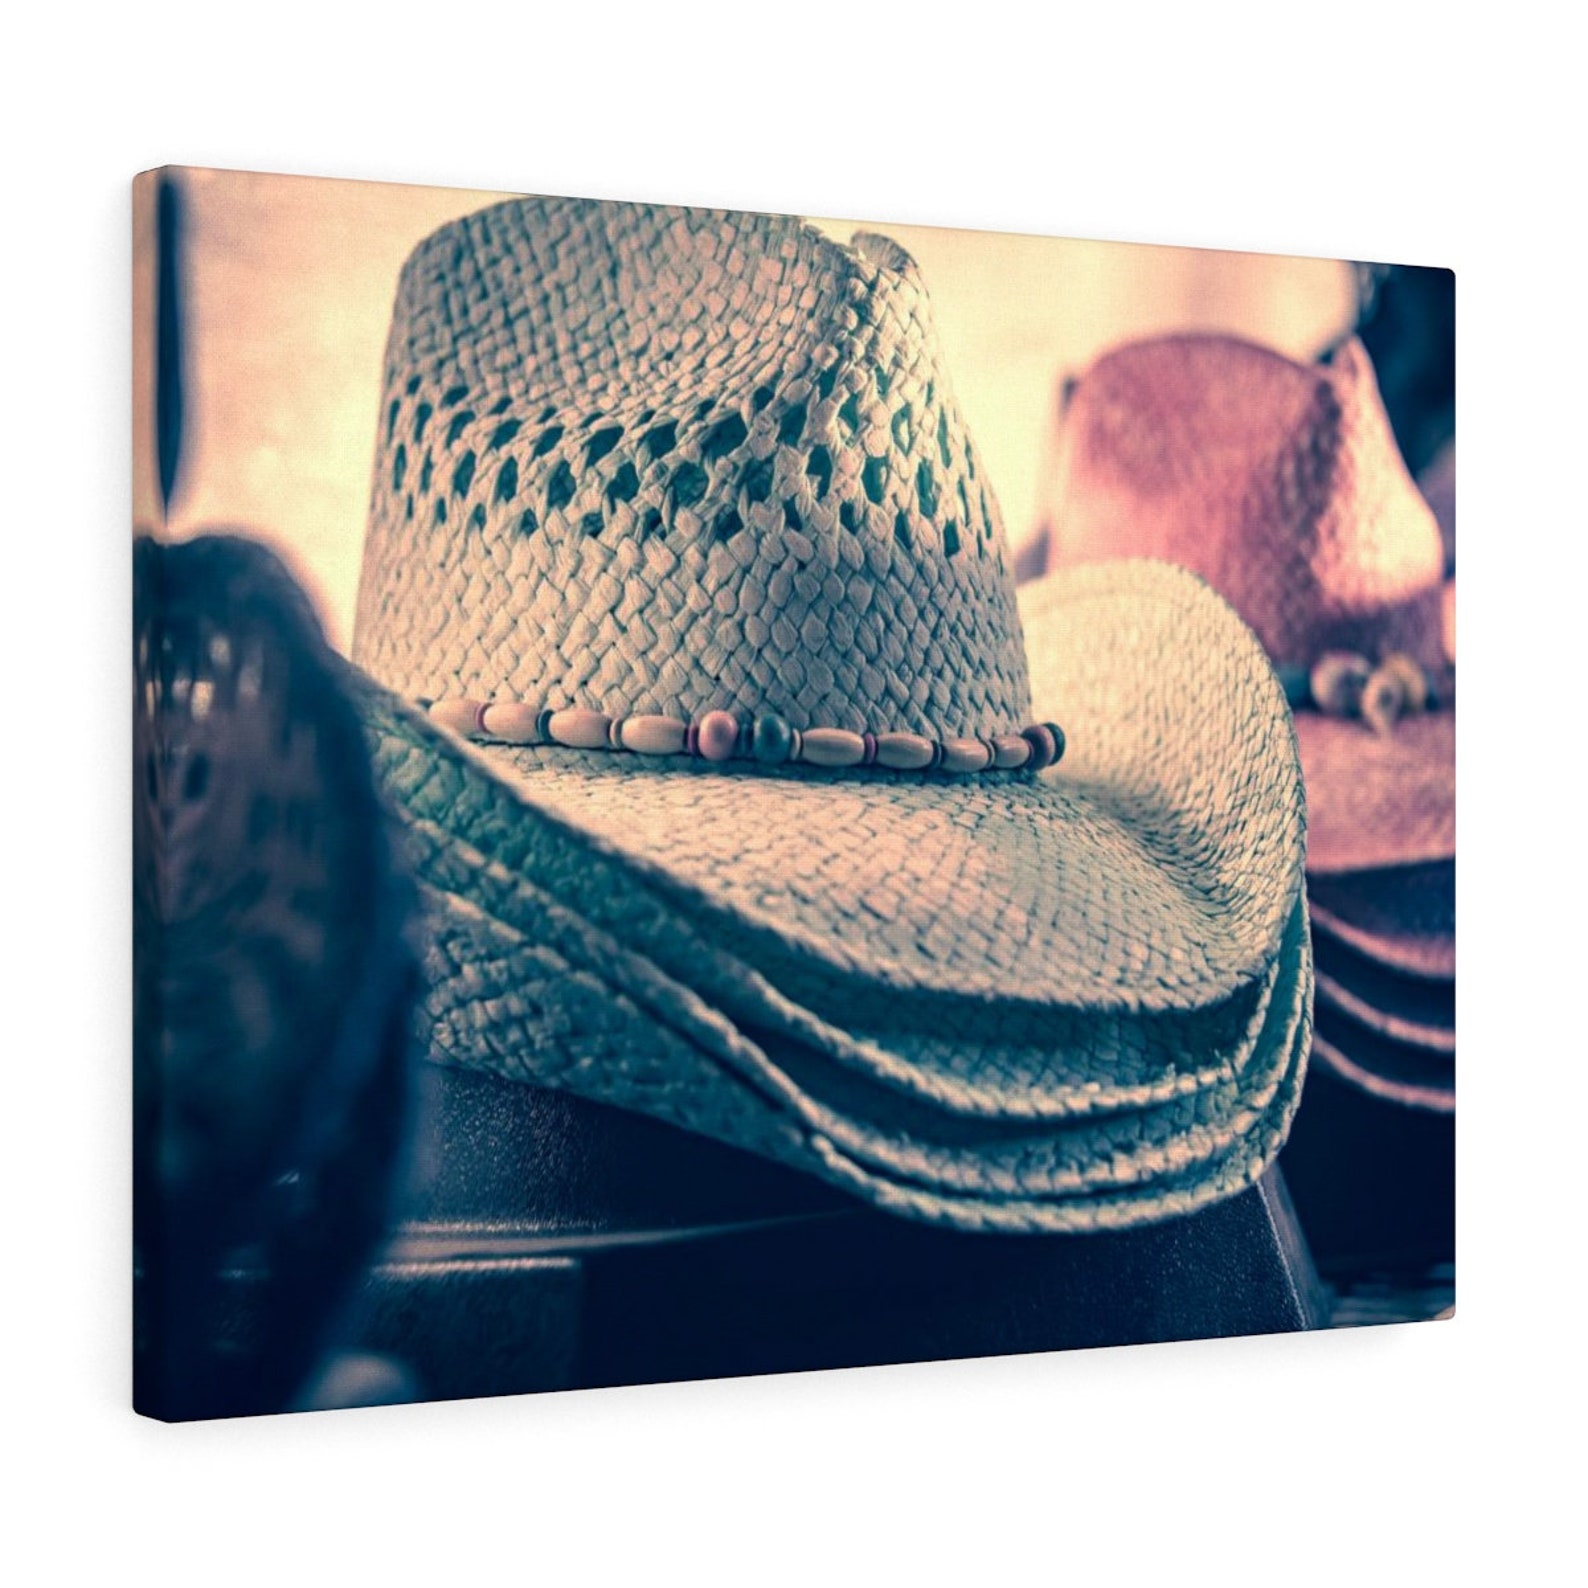 Western Wall Decor Cowboy Cowgirl Hats on Display High - Etsy